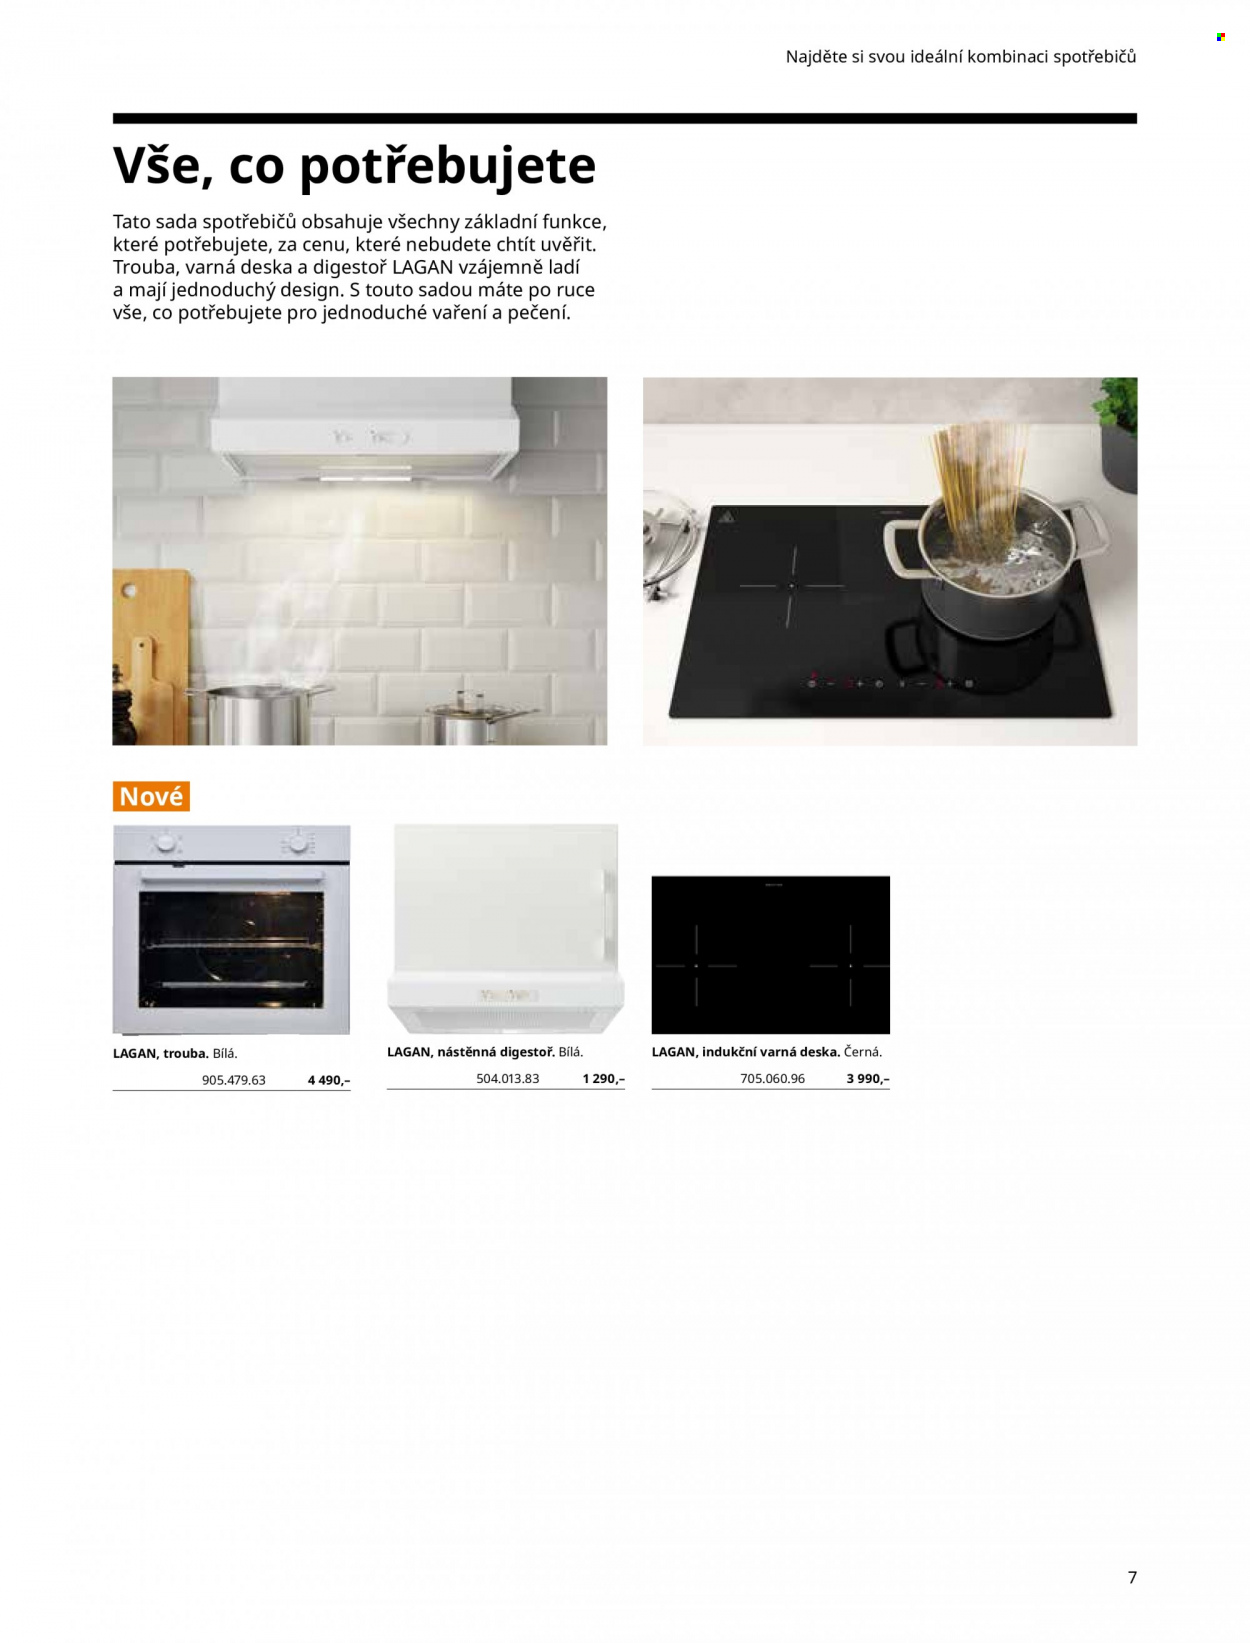 thumbnail - Leták IKEA - Produkty v akci - digestoř, trouba, indukční varná deska, varná deska. Strana 7.